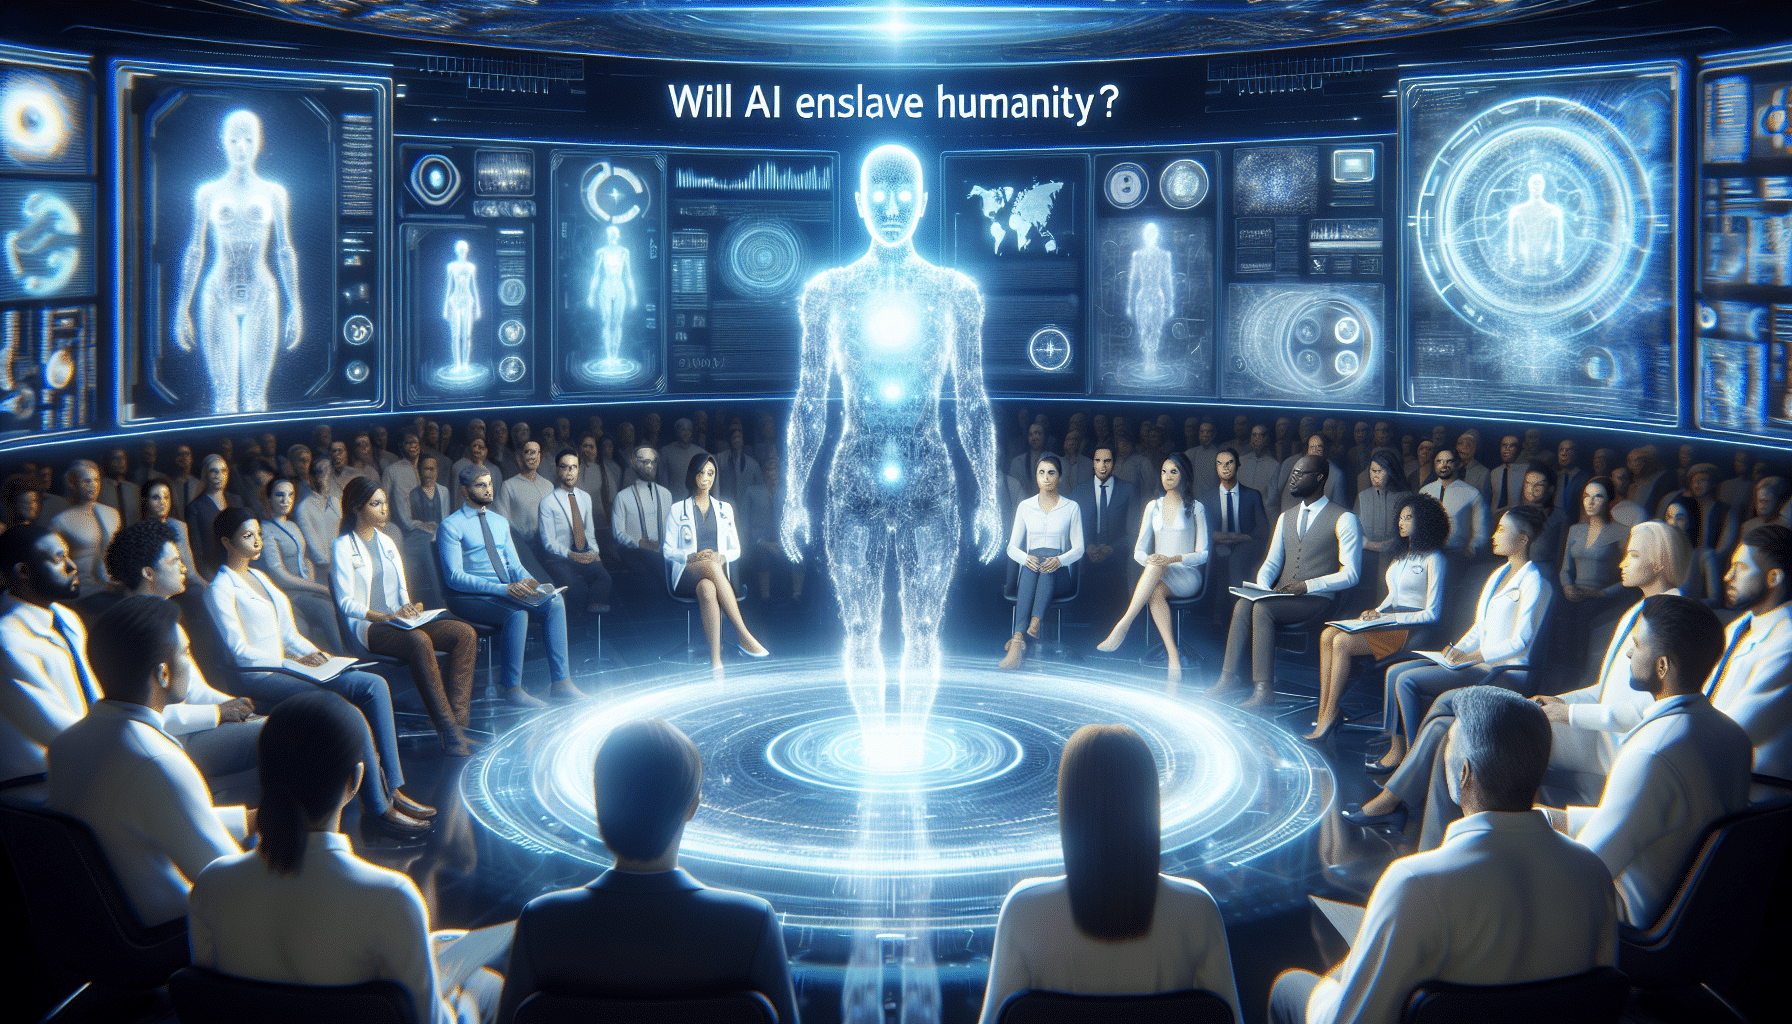 descubre lo que chatgpt tiene que decir sobre si la inteligencia artificial esclavizará a la humanidad.